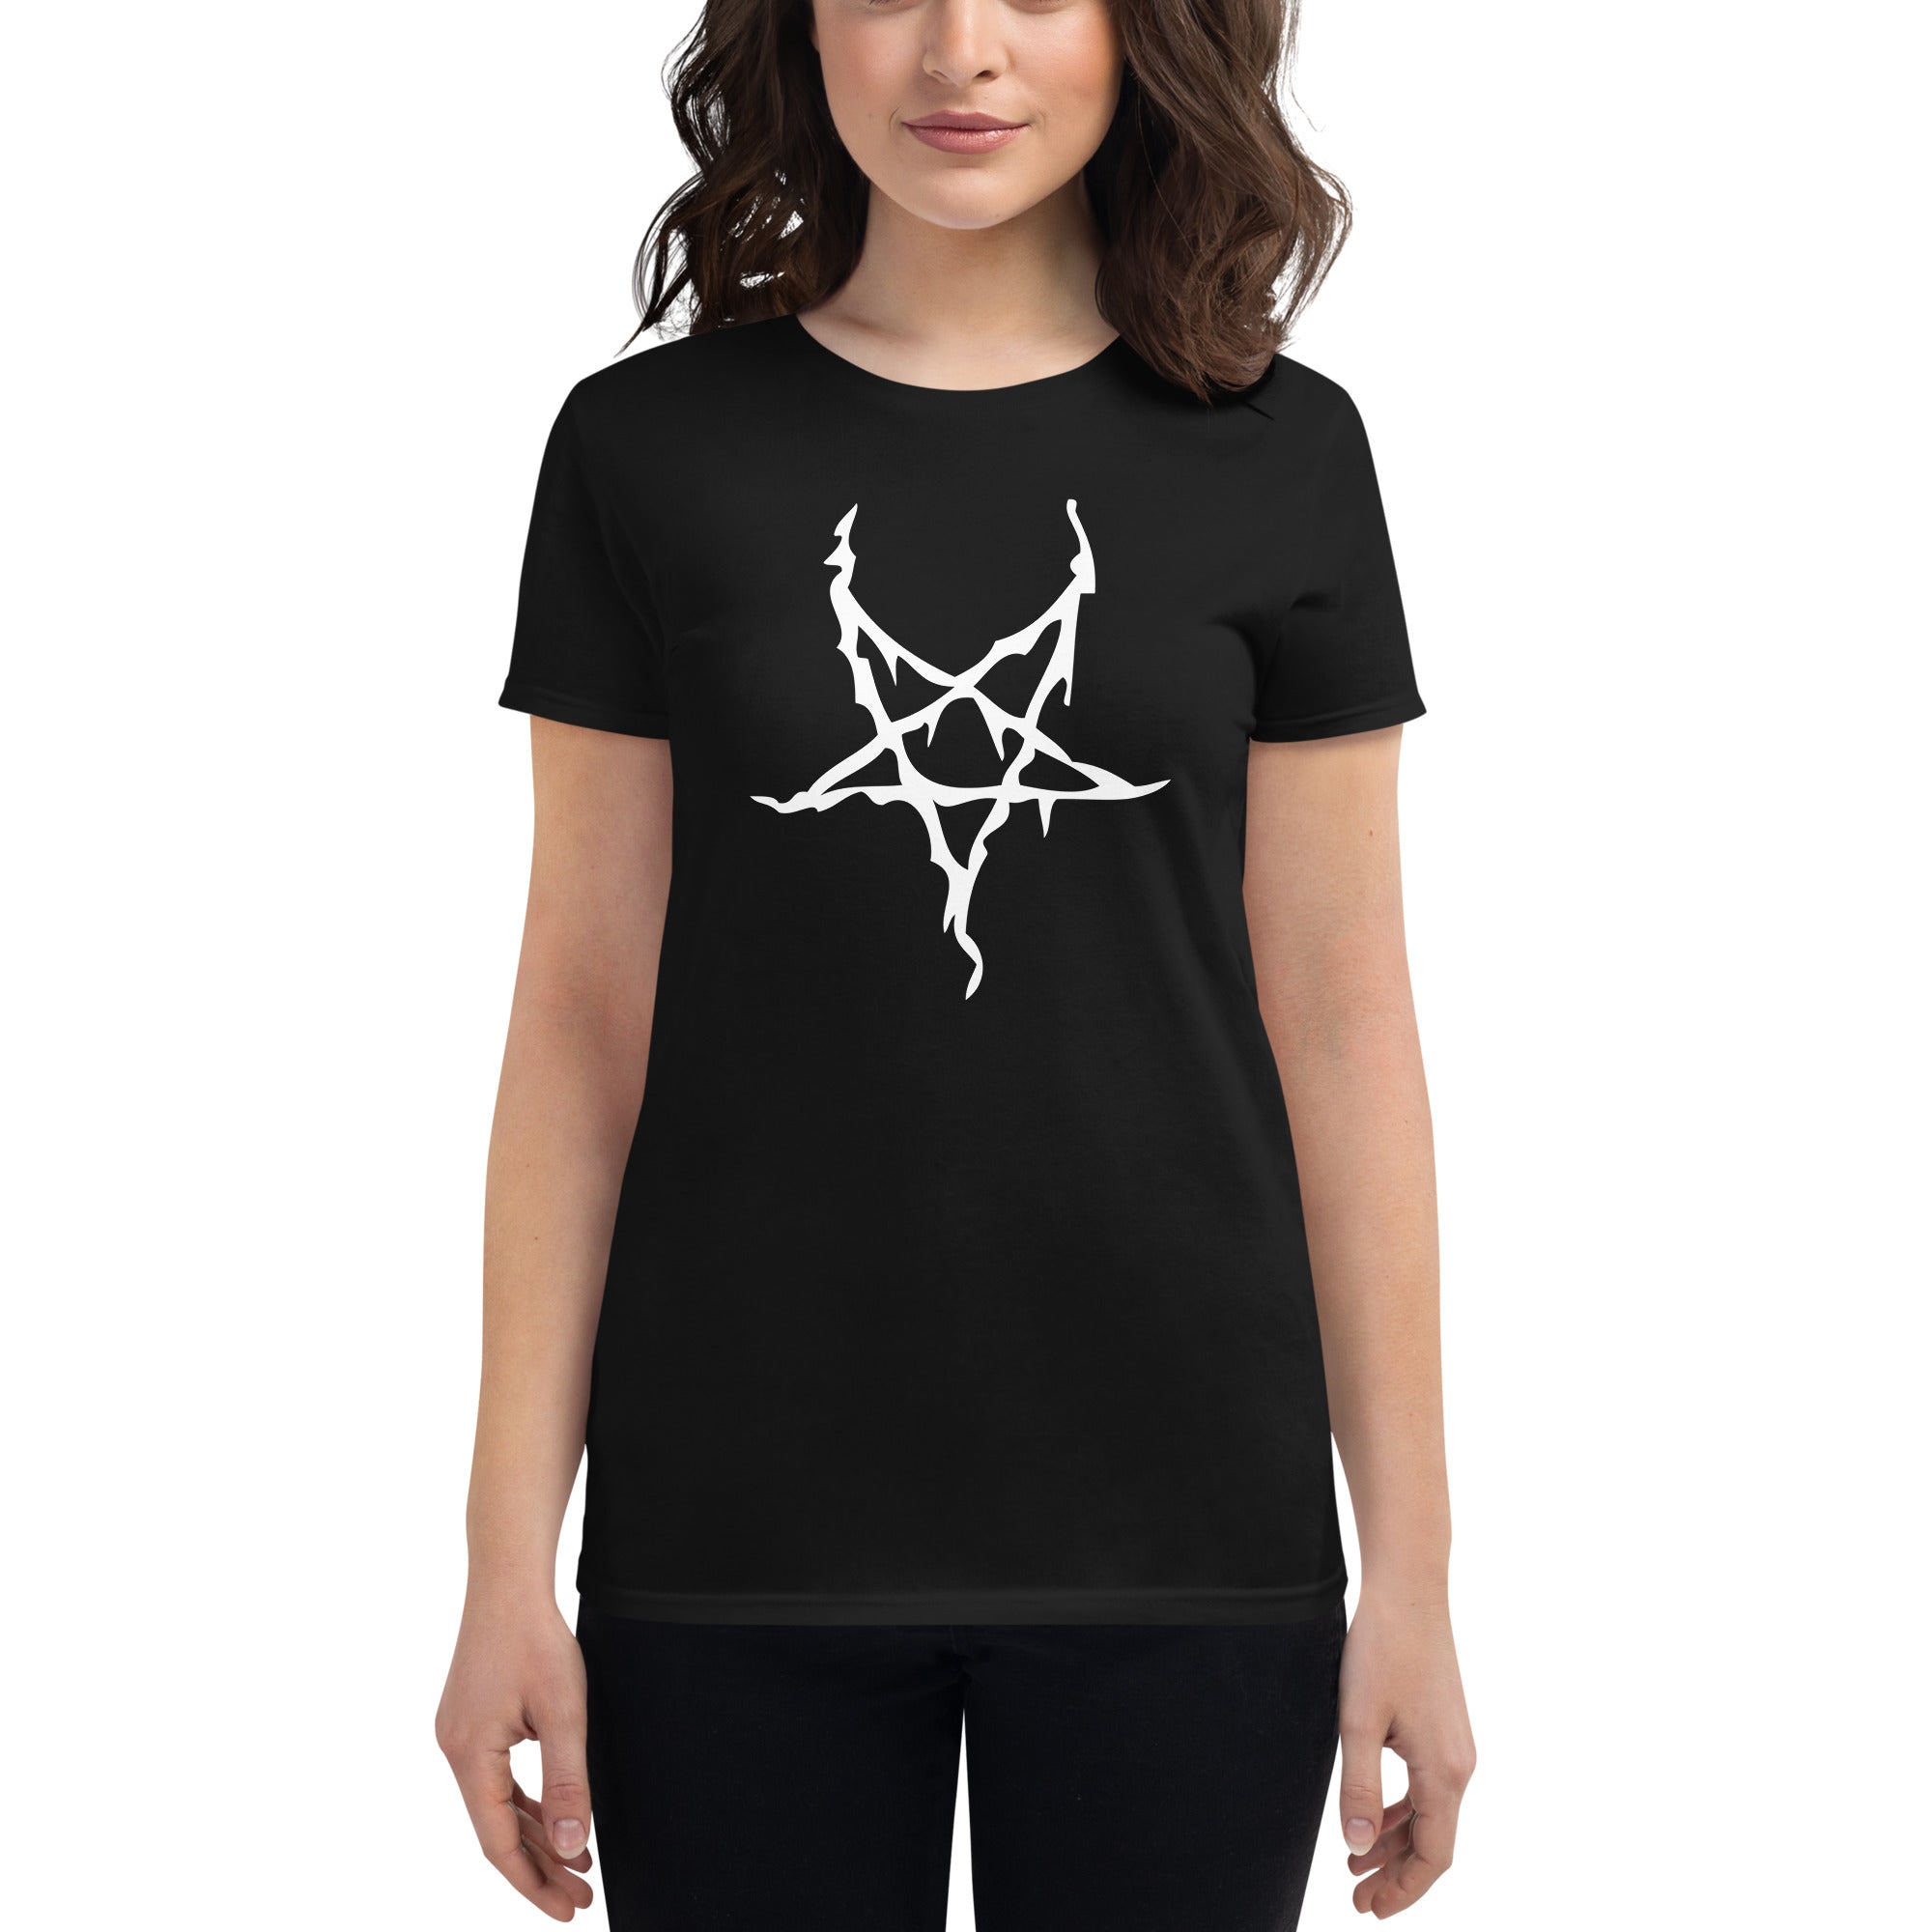 White Melting Inverted Pentagram Black Metal Women's Short Sleeve Babydoll T-shirt